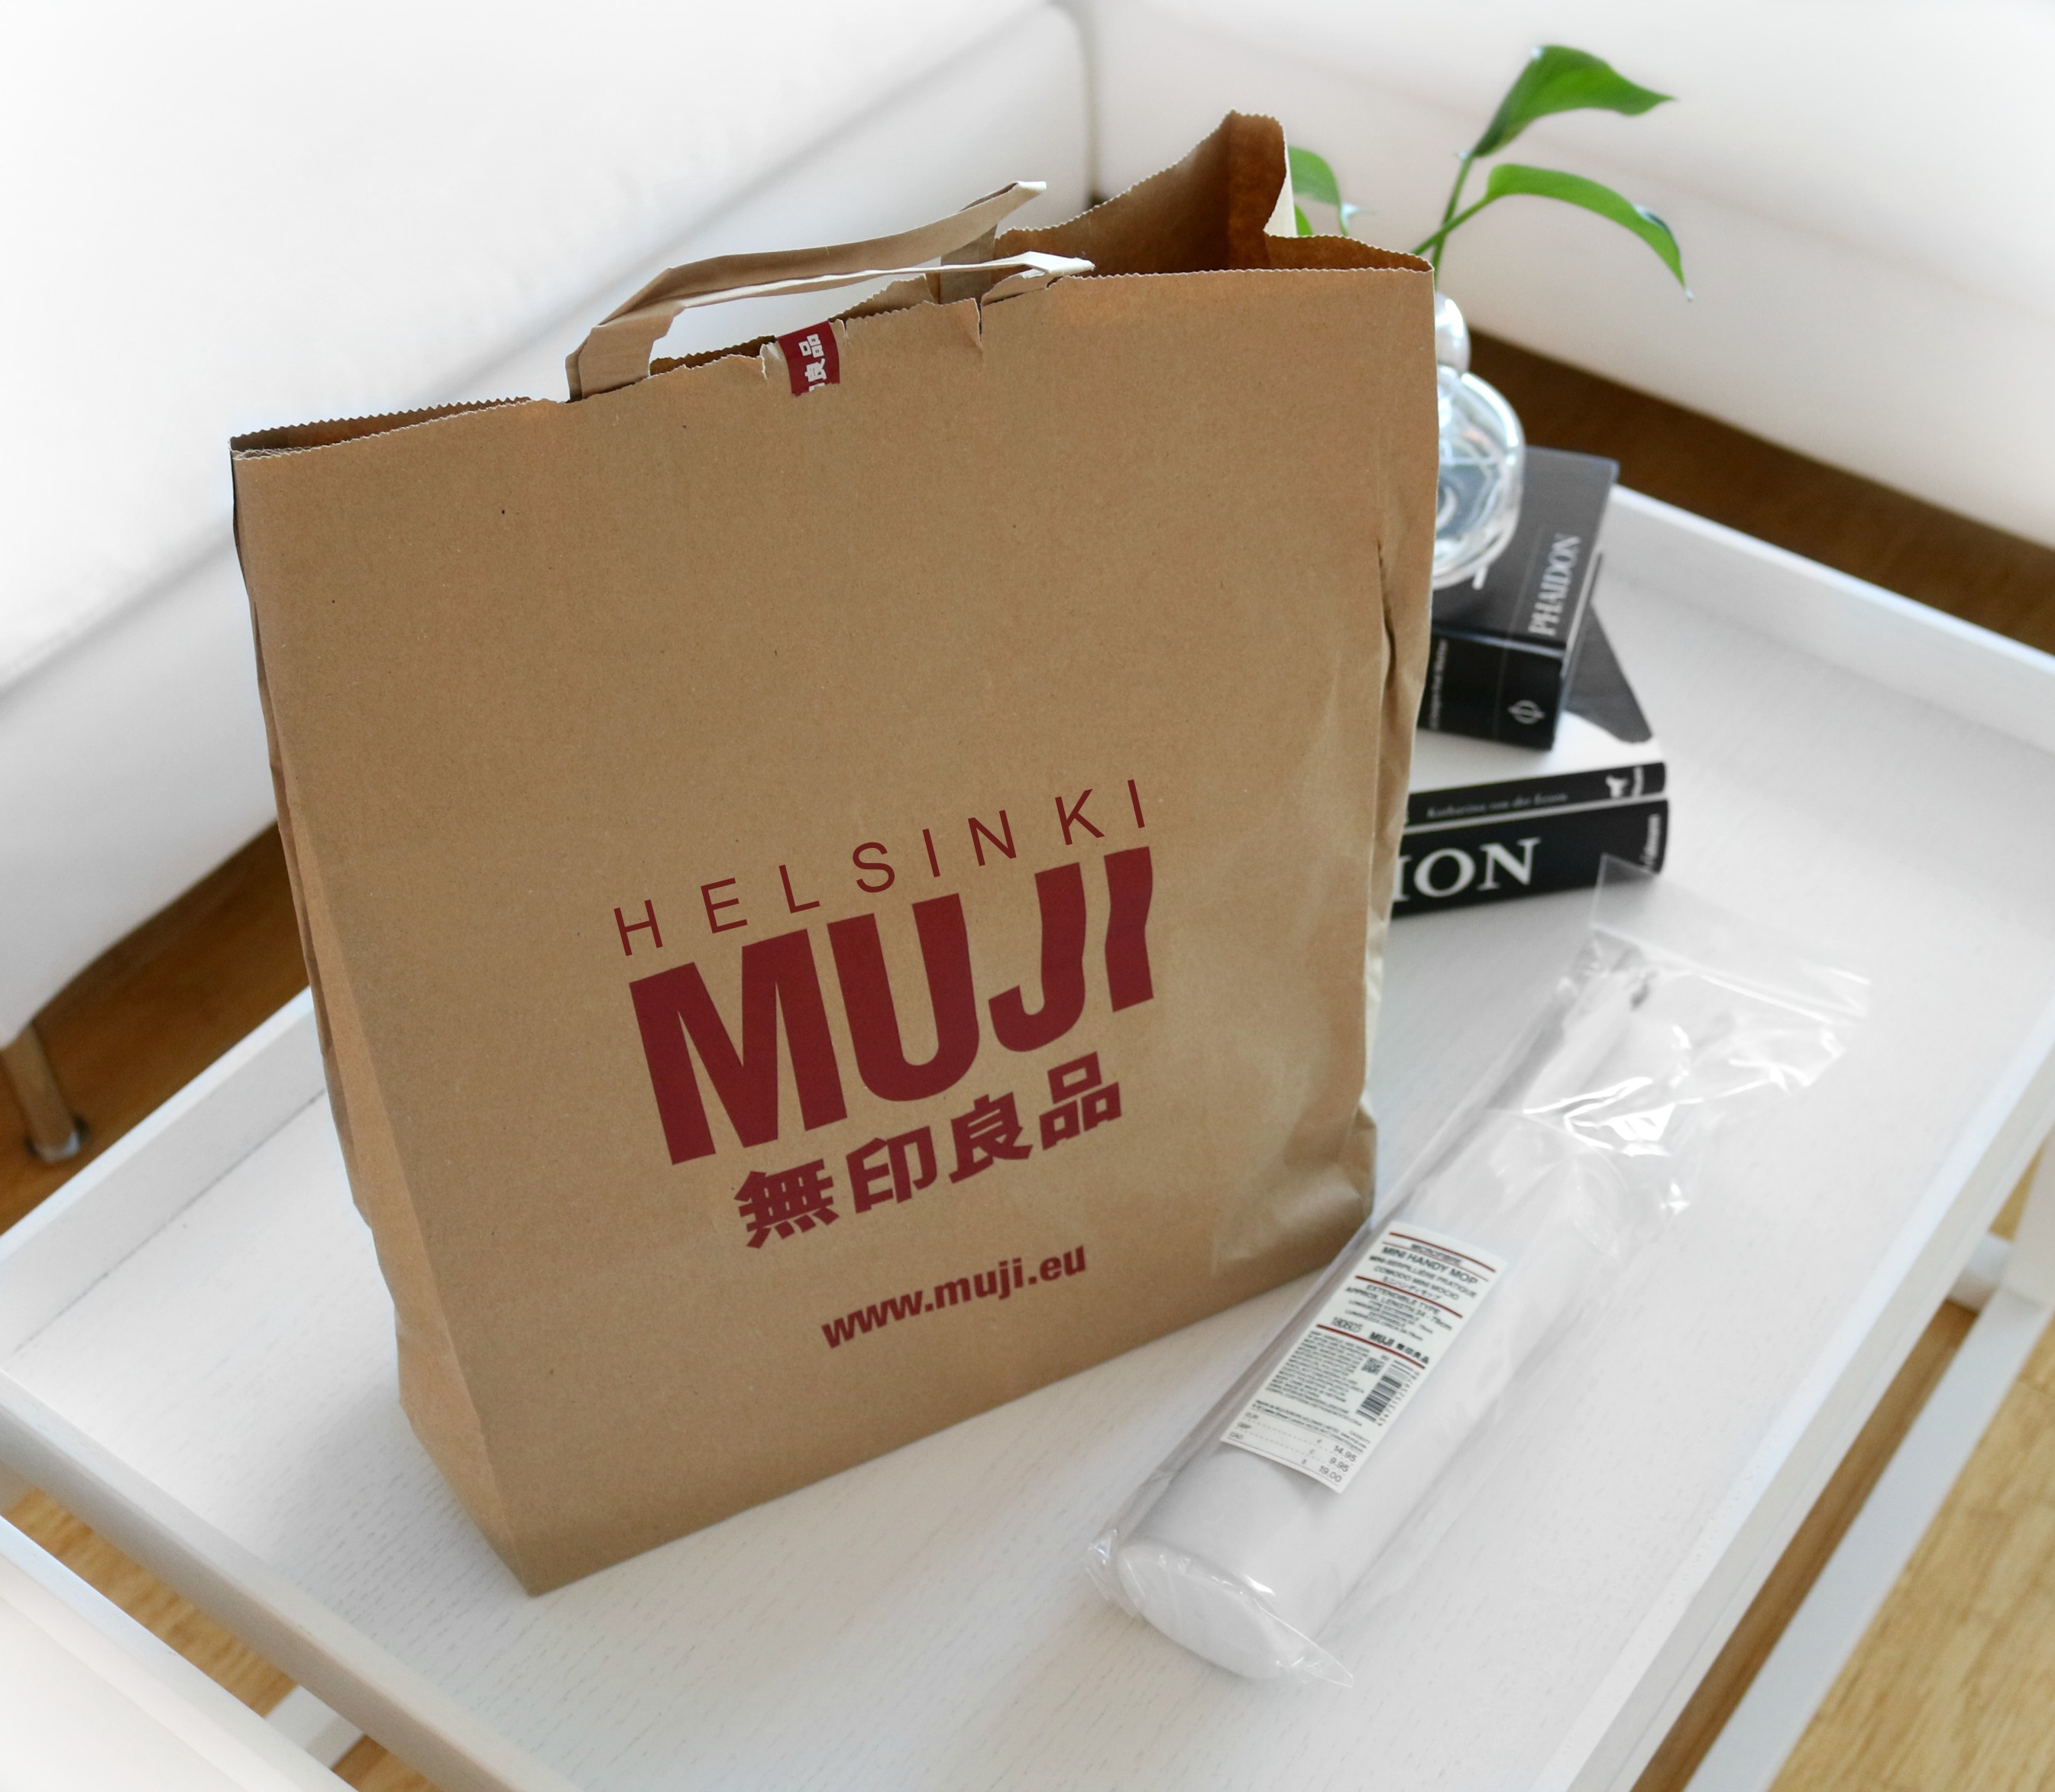 MUJI helsinki minimalistinen sisustuskauppa japanilainen